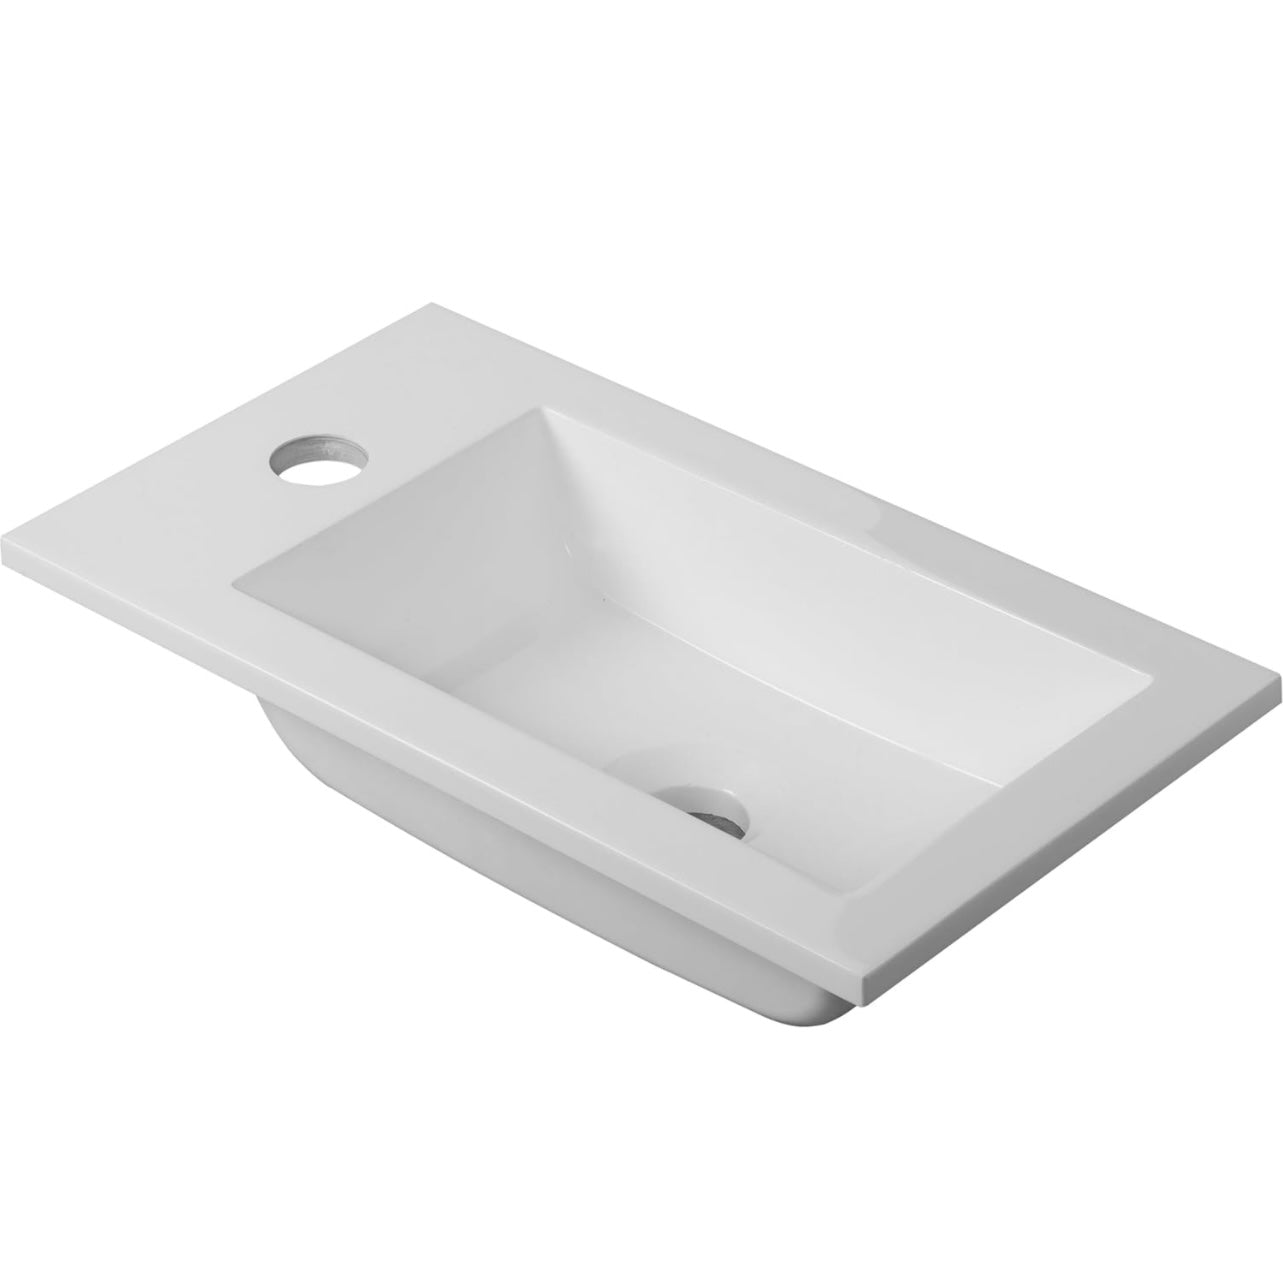 ארון אמבטיה תלוי קטן PVC אפוקסי דגם אסיף שחור מט